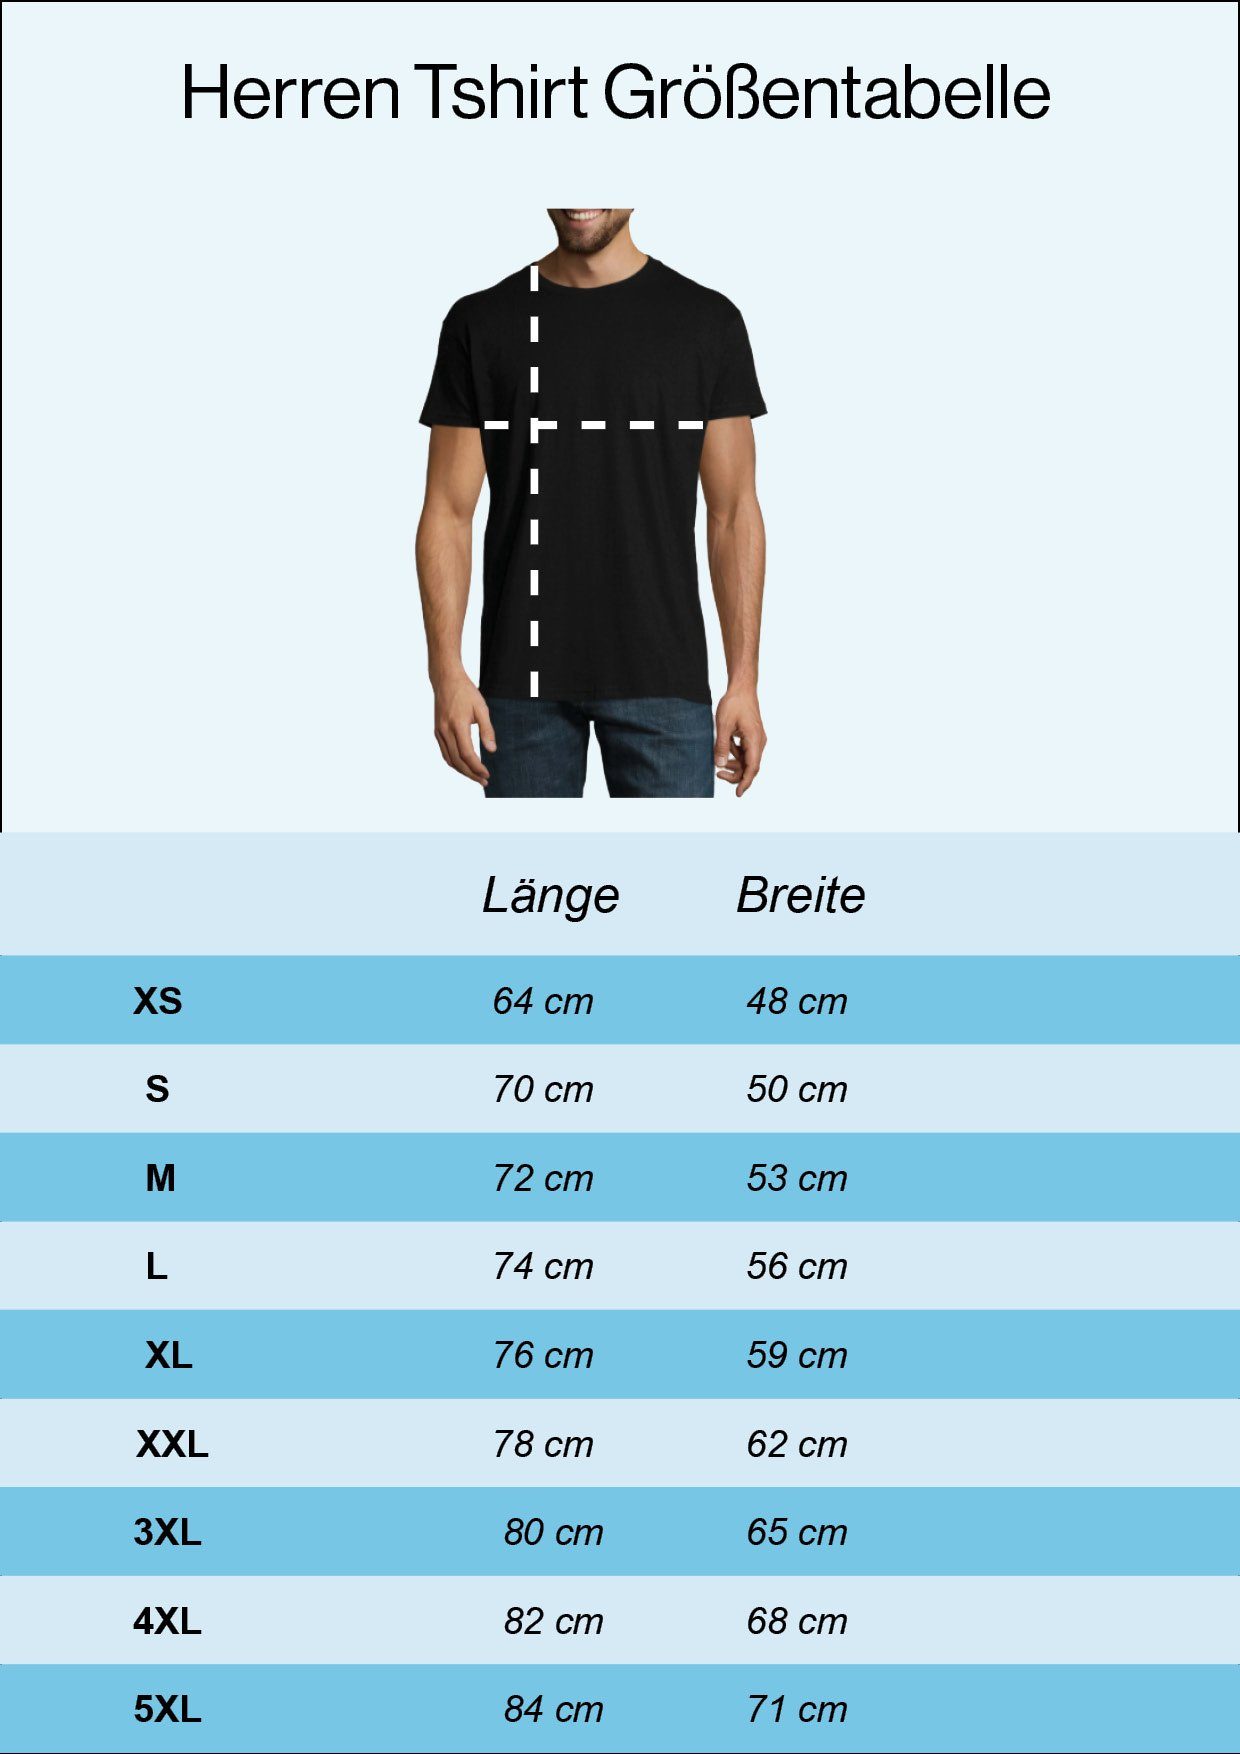 Sind Saurier" Youth lustigem Shirt Herren mit Spruch Weiß Designz Frontprint "Dinos T-Shirt